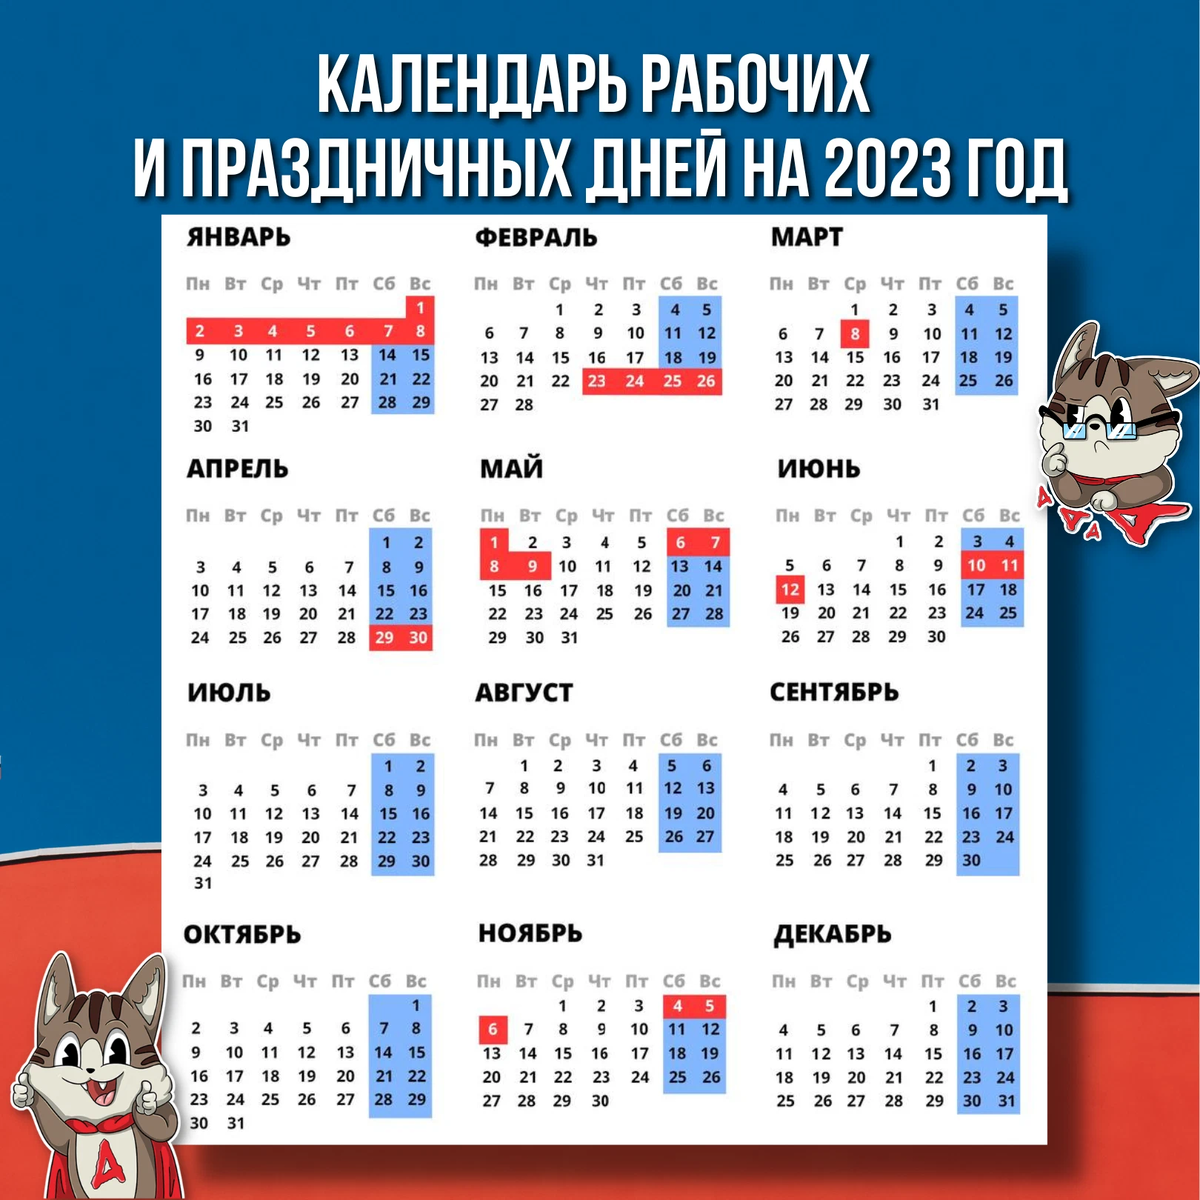 Какой праздник декабря 2023. Праздничные выходные в 2023 году. Календарные праздники на 2023 год. Новогодние выходные в 2023 году. Выходные и праздничные дни в 2023 году в России.